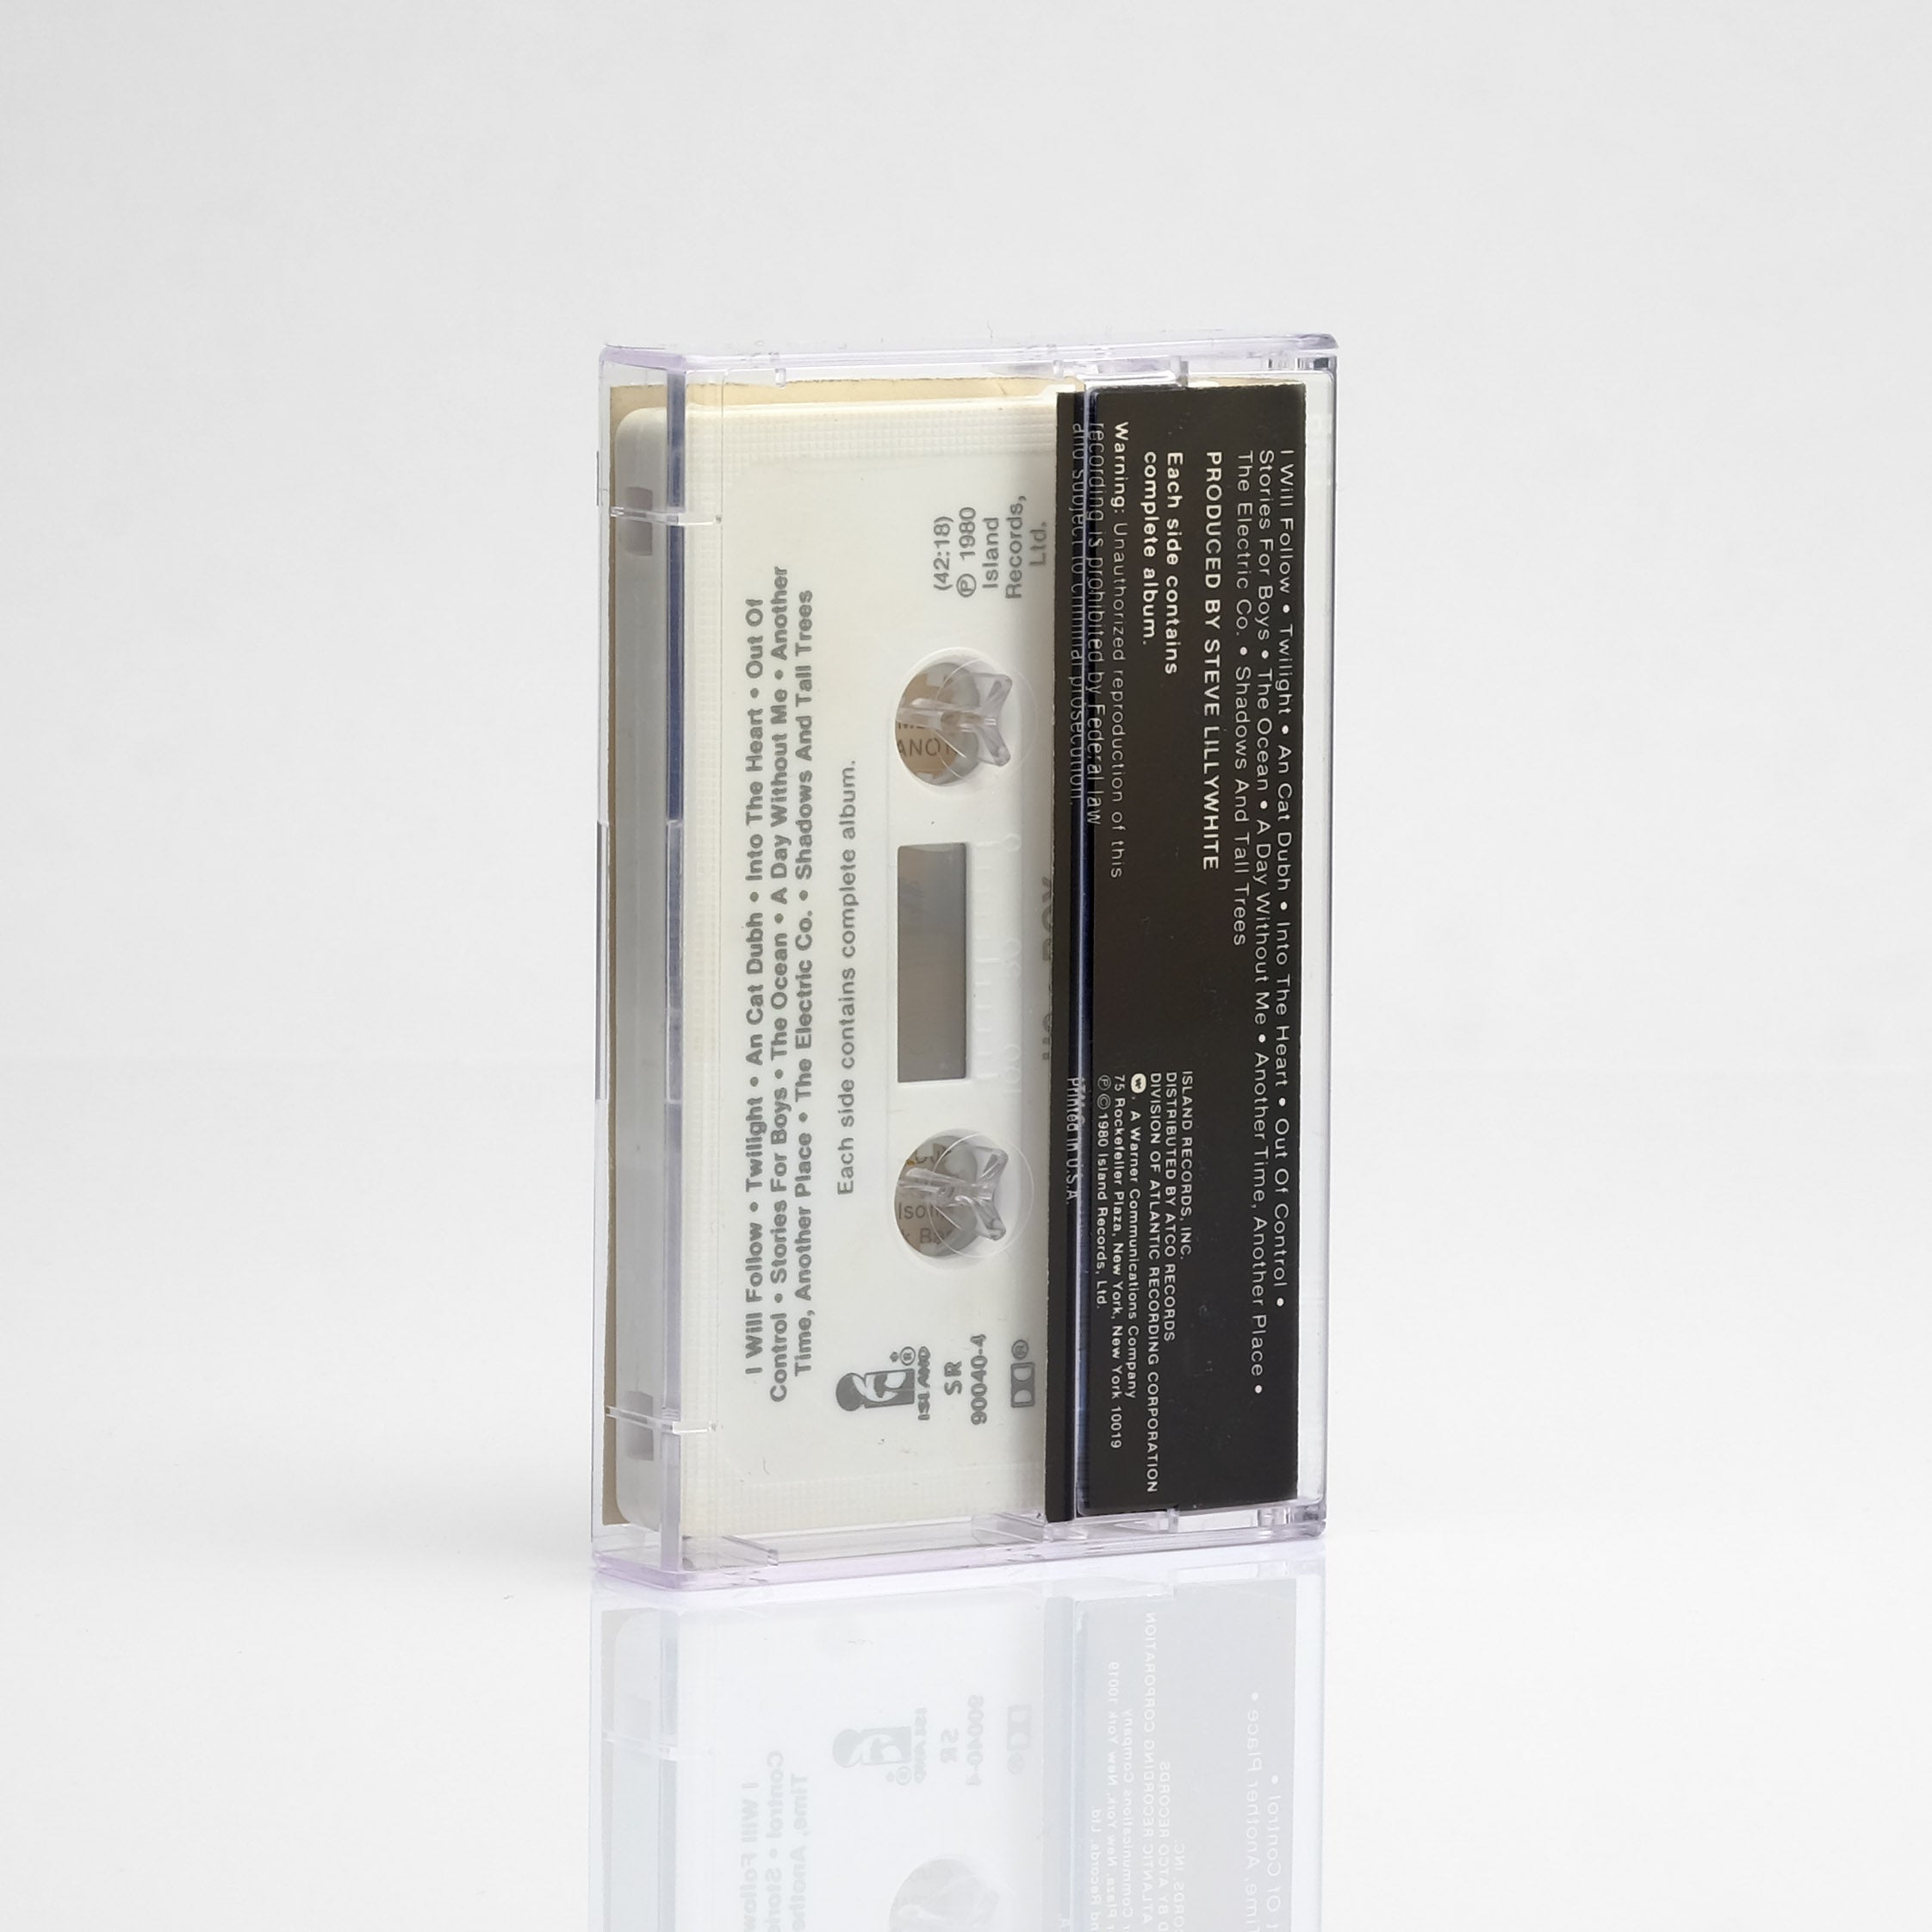 U2 - Boy Cassette Tape